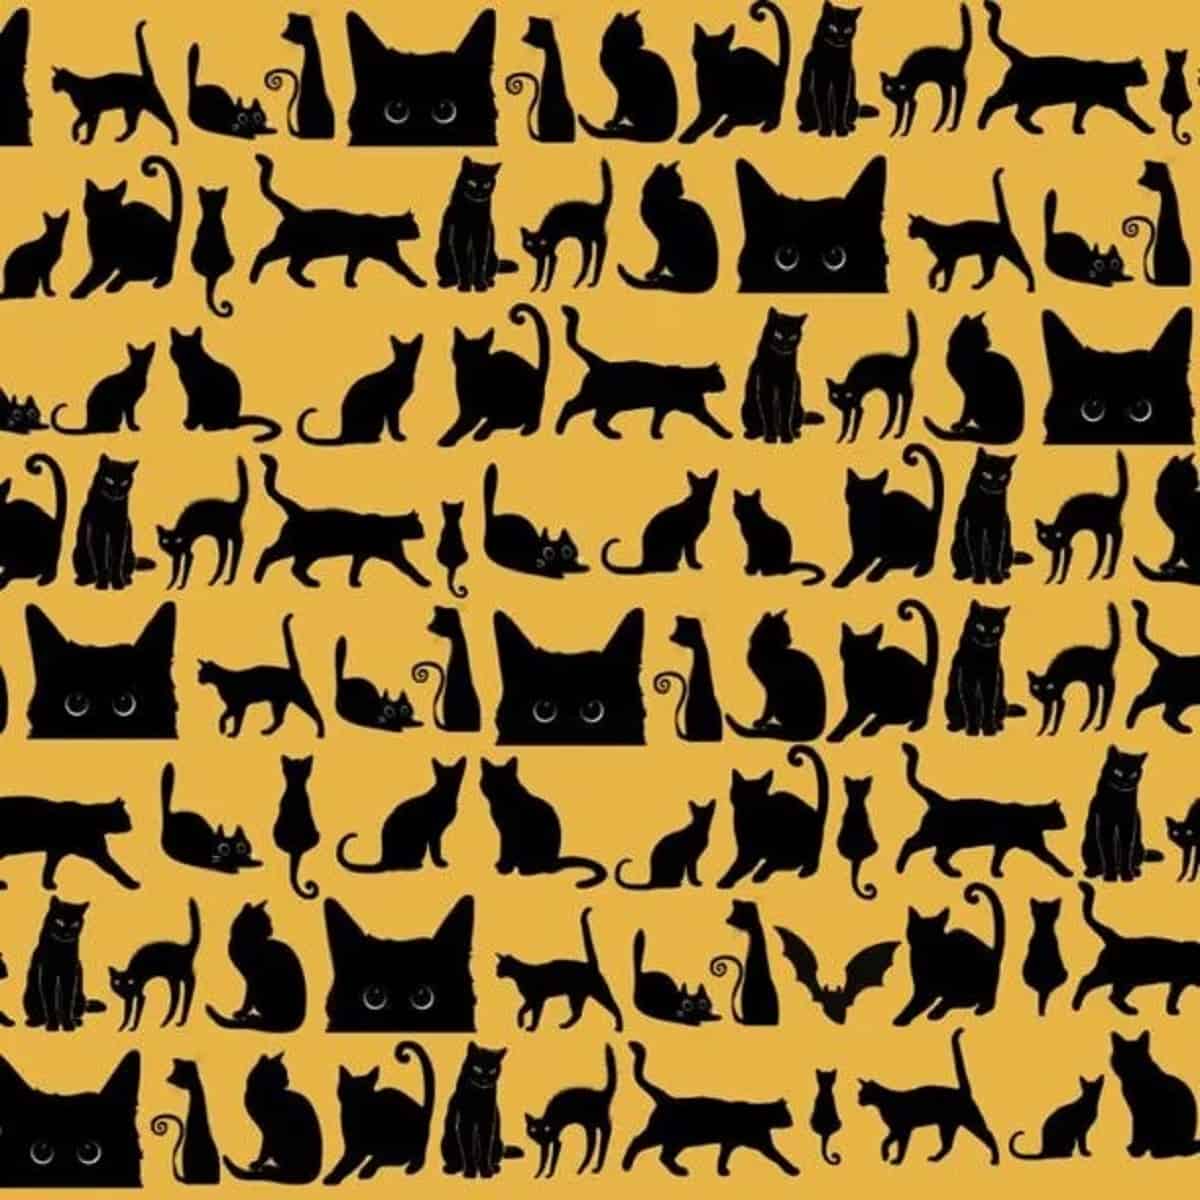 Sfida: Riesci a trovare il pipistrello tra i gatti in meno di 13 secondi?